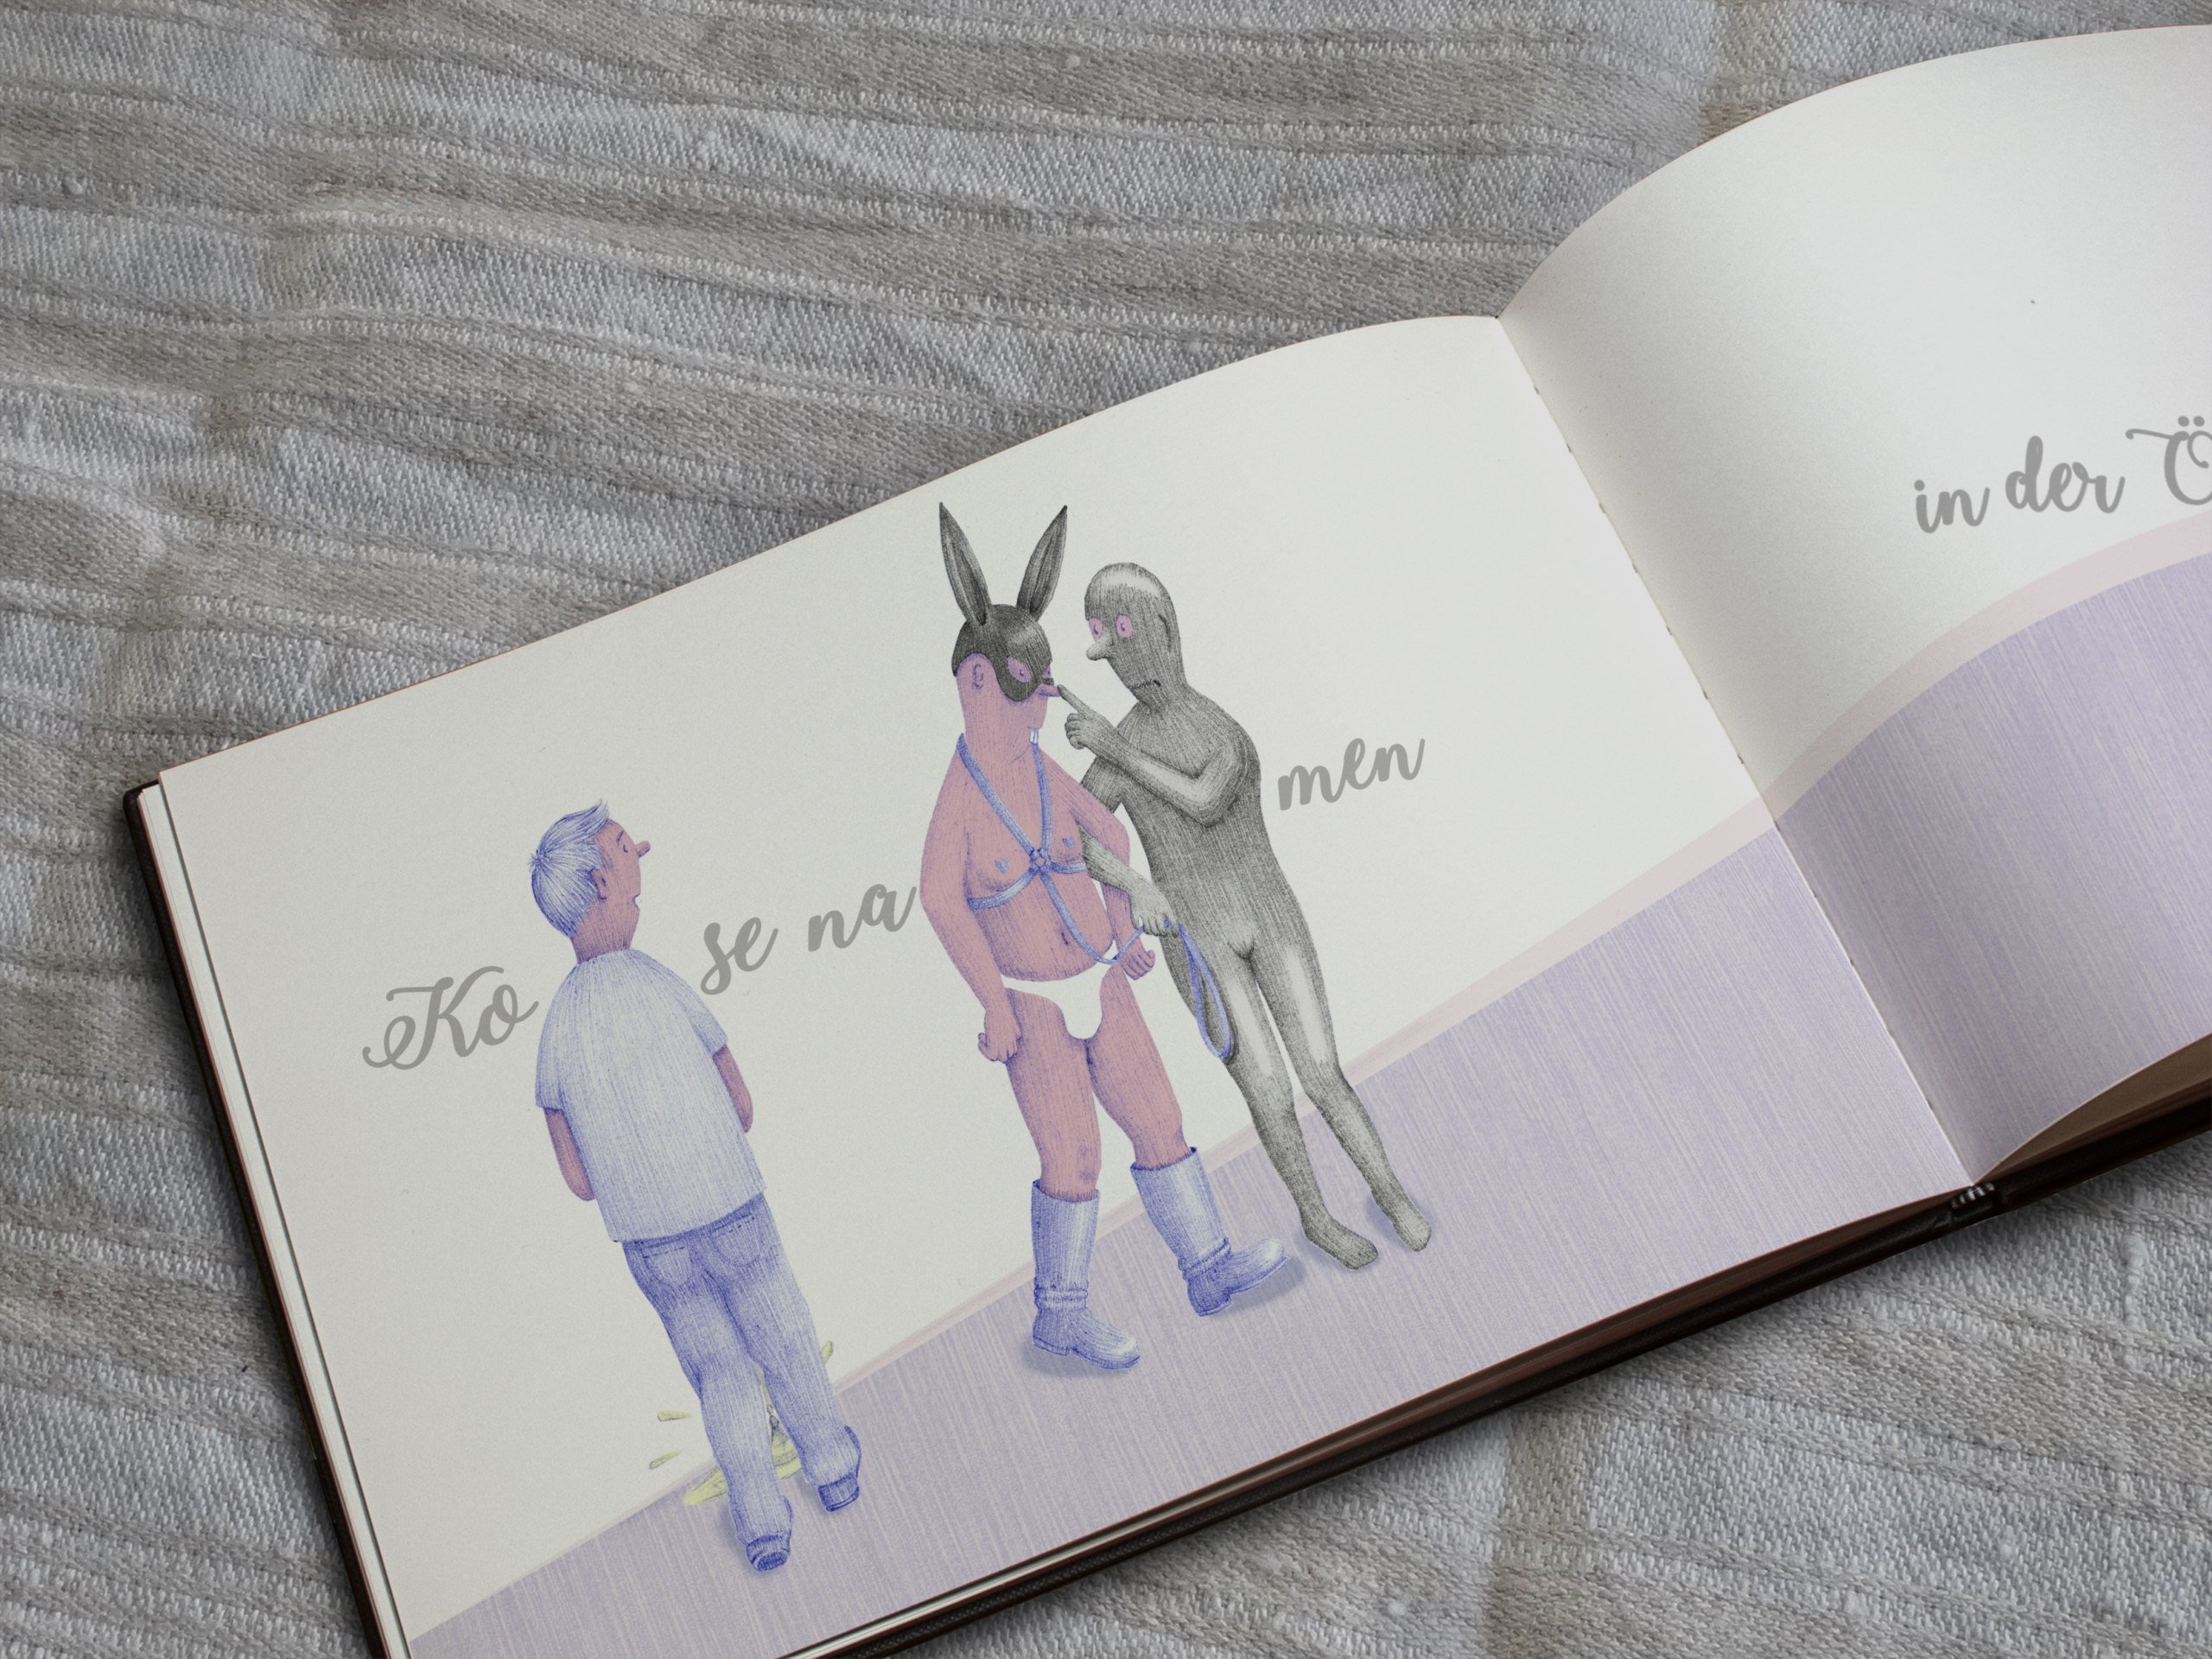 Gestaltung eines humoristischen Buches über soziale Interaktion